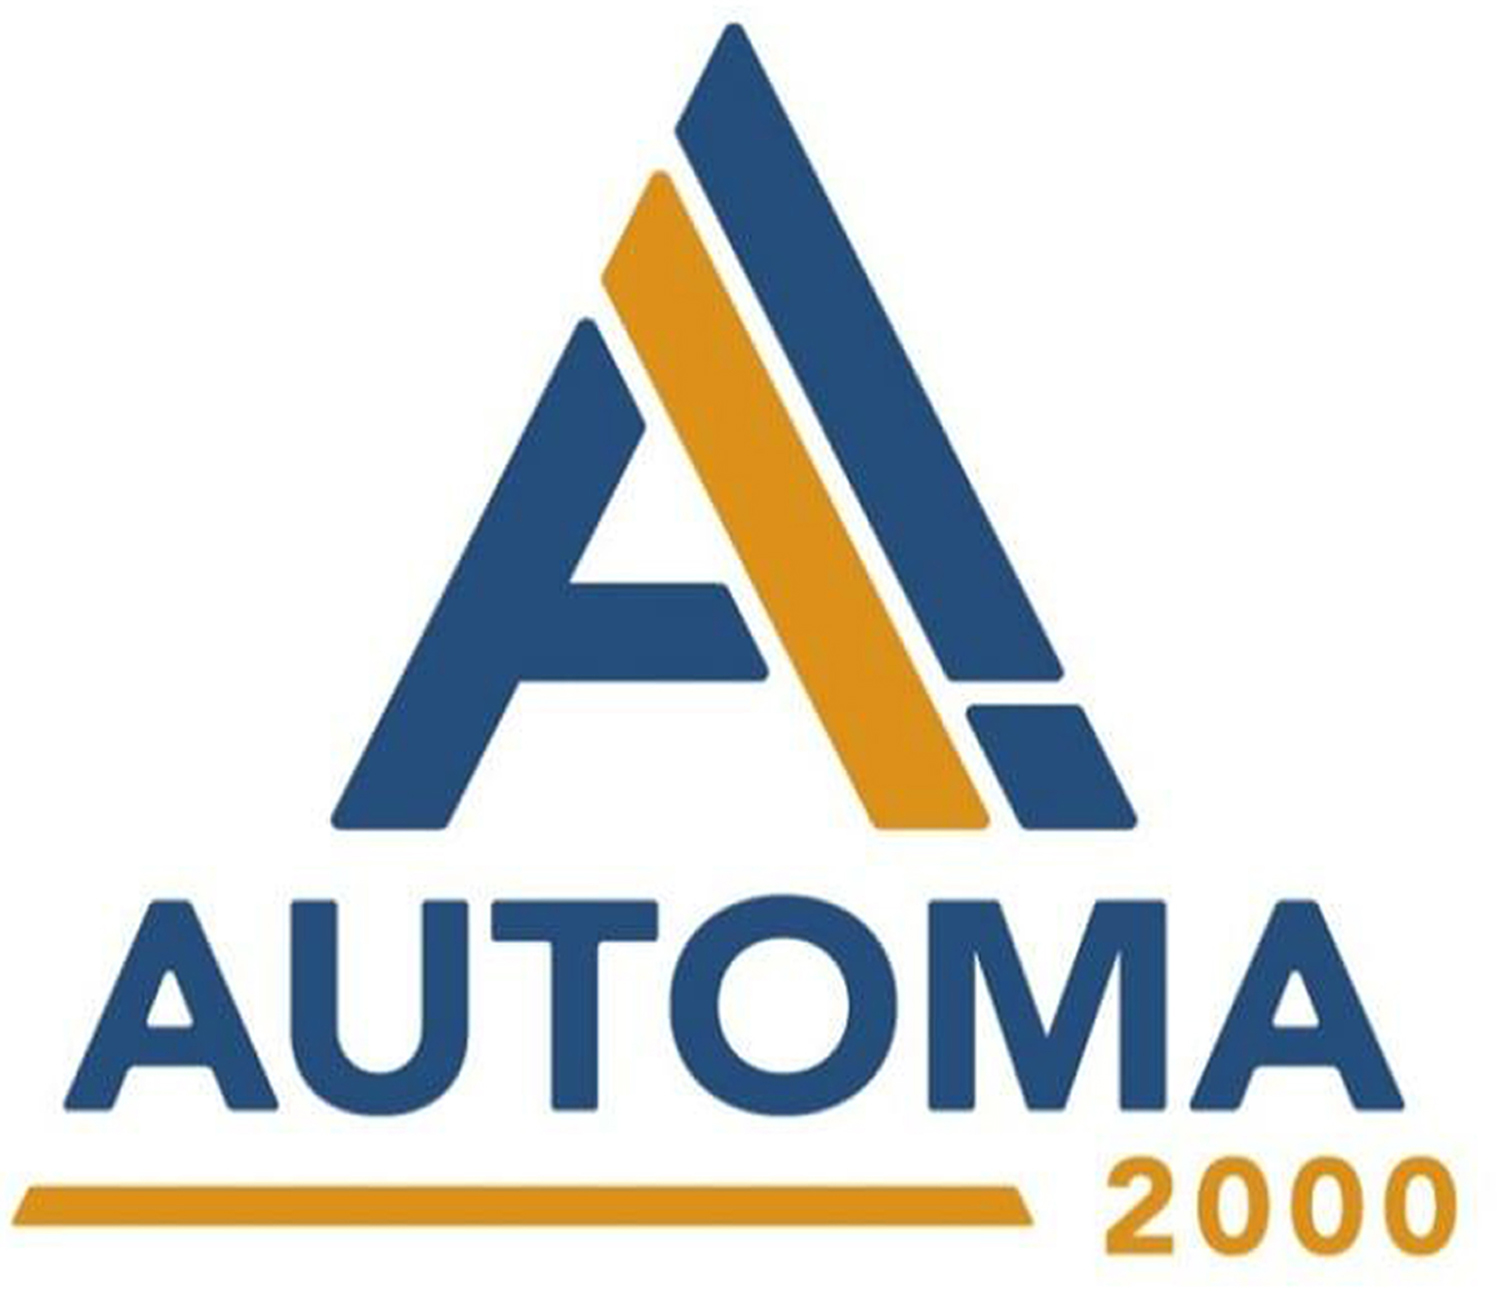 Automa 2000